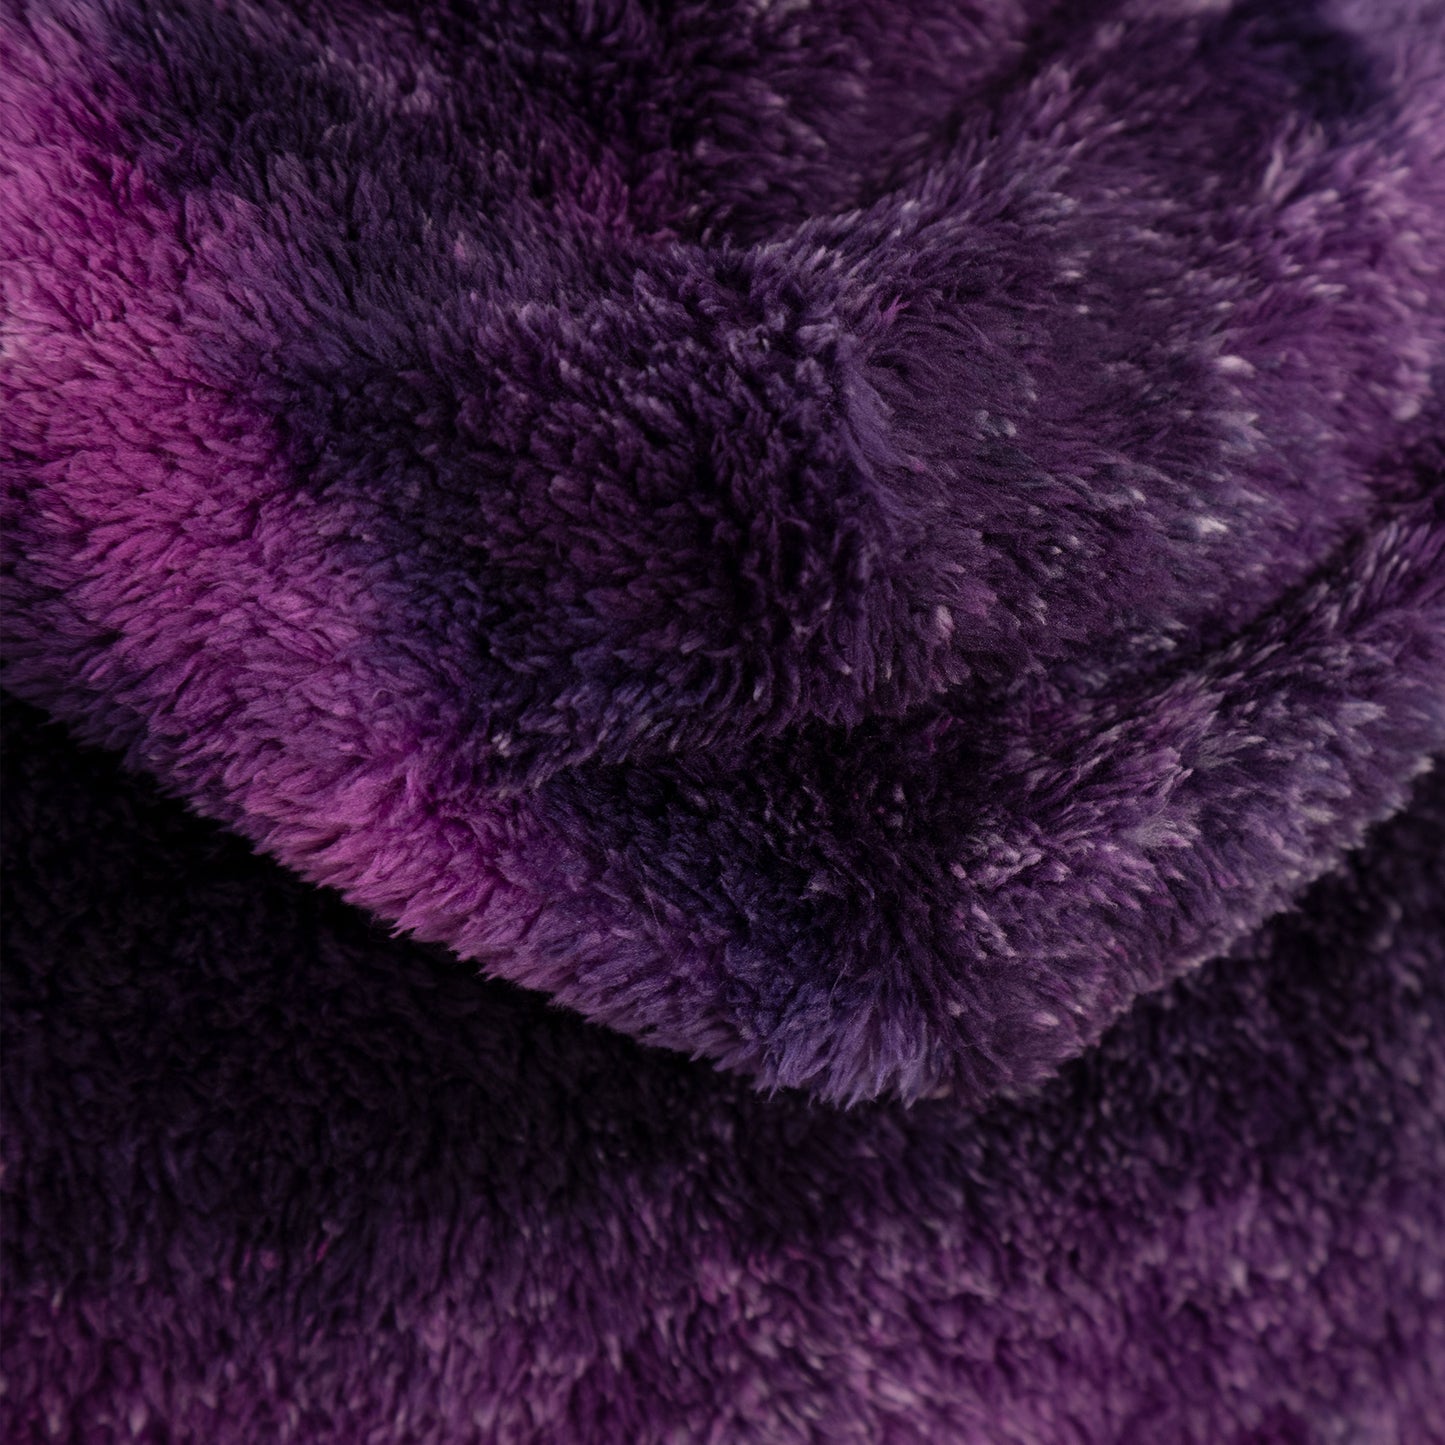 Purple Tie-Dye Fleece Hooded Jacket